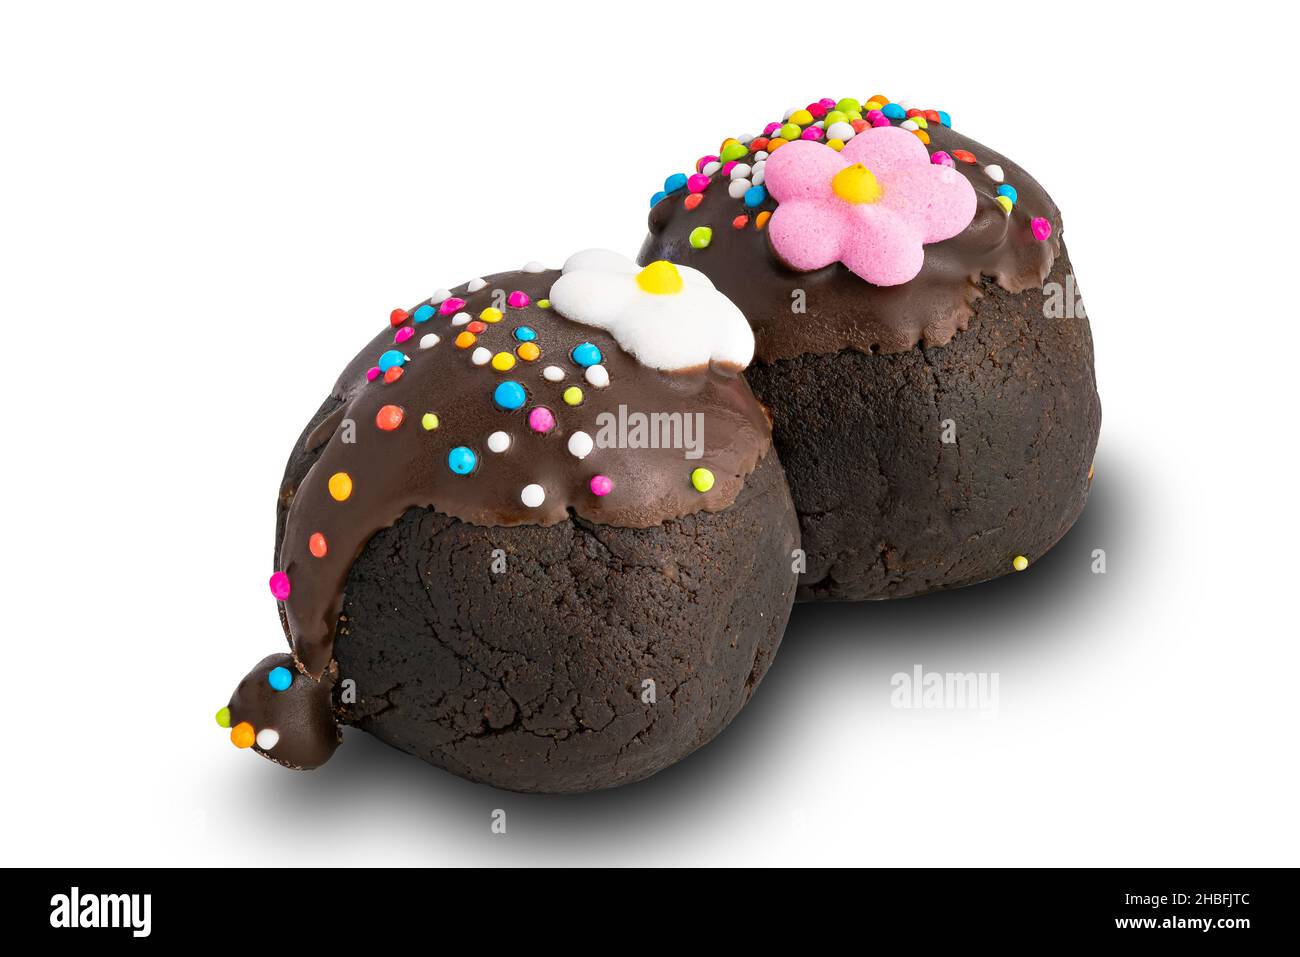 Vista delle palle di cioccolato o delle palle di cioccolato, condita con spruzzi di arcobaleno multicolore e fiori di zucchero colorati su sfondo bianco con percorso di taglio. Foto Stock